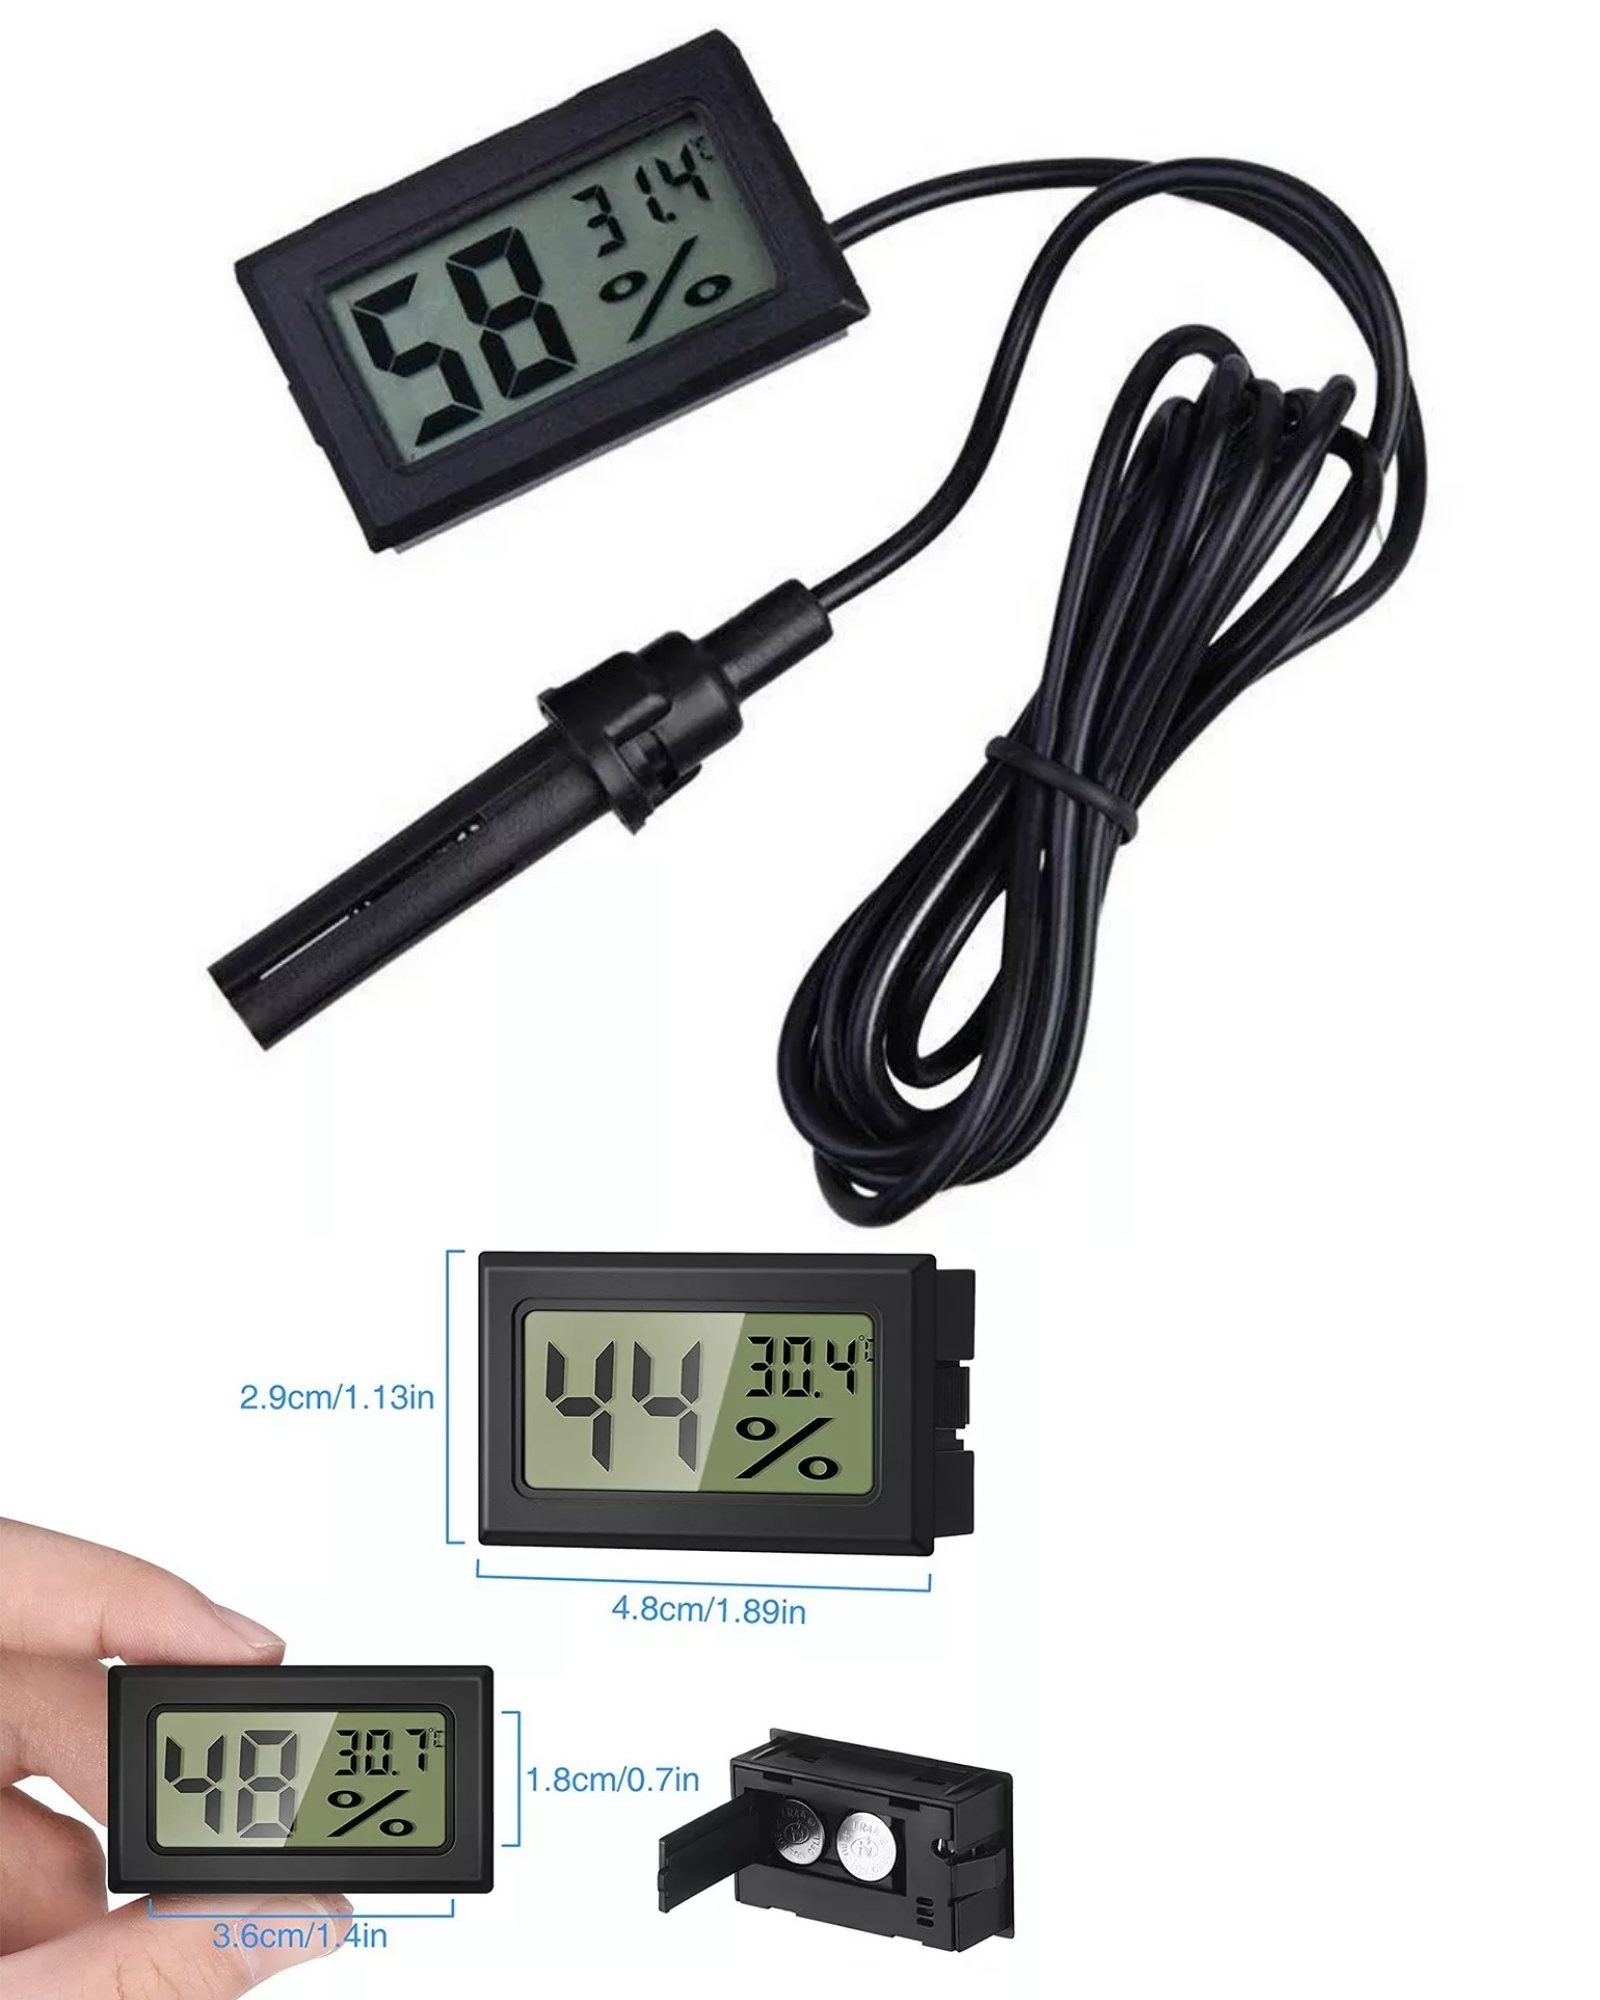 Termómetro Higrómetro Digital Lcd Humedad Temperatura con Sonda